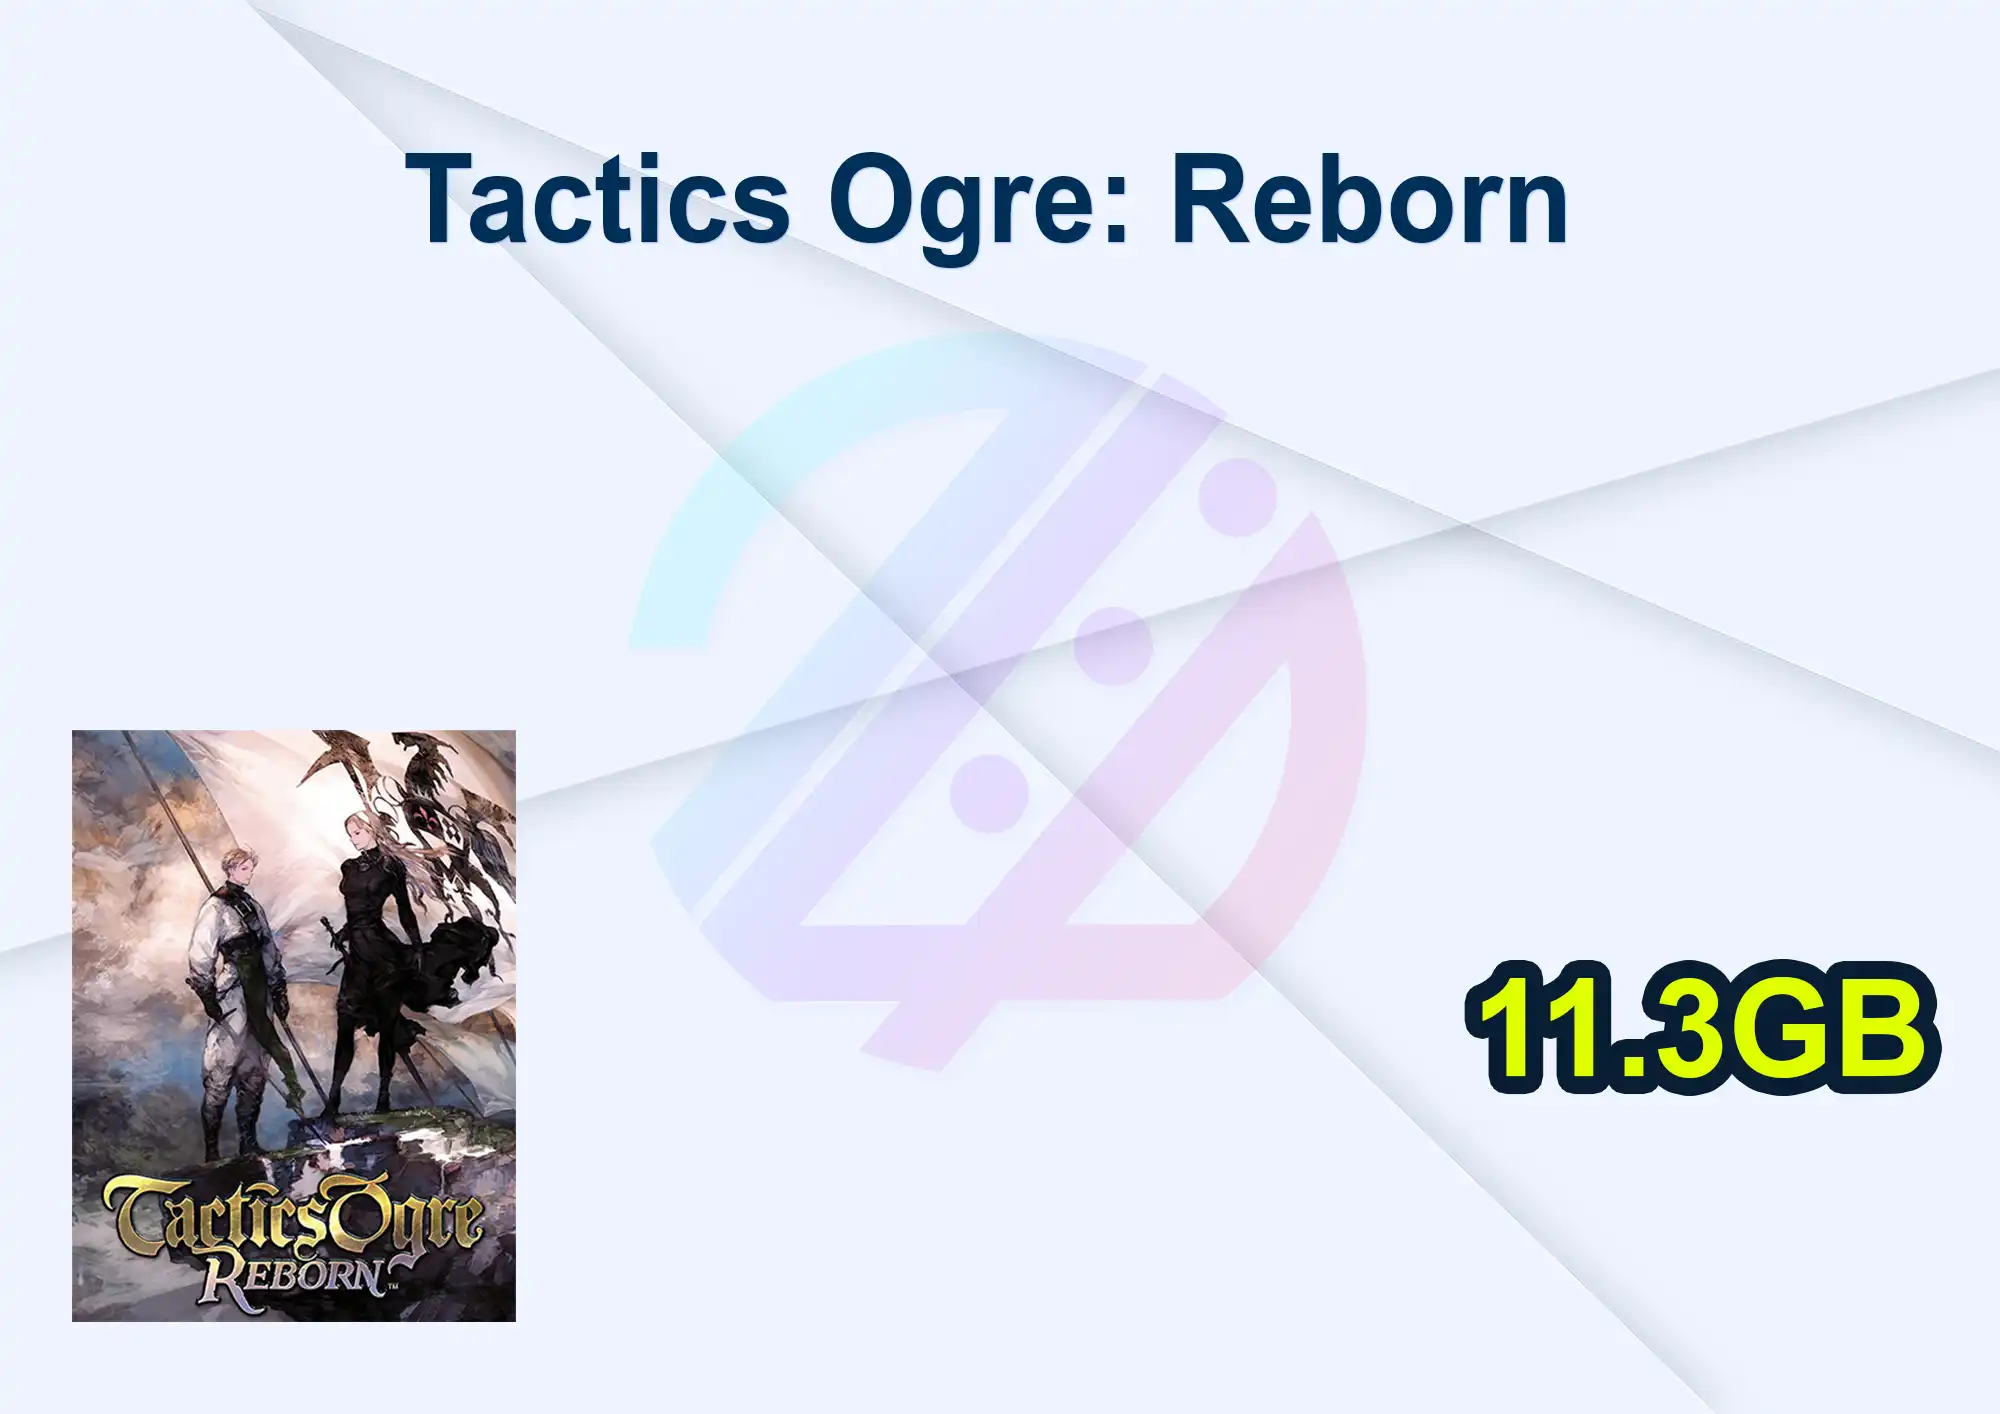 Tactics Ogre: Reborn